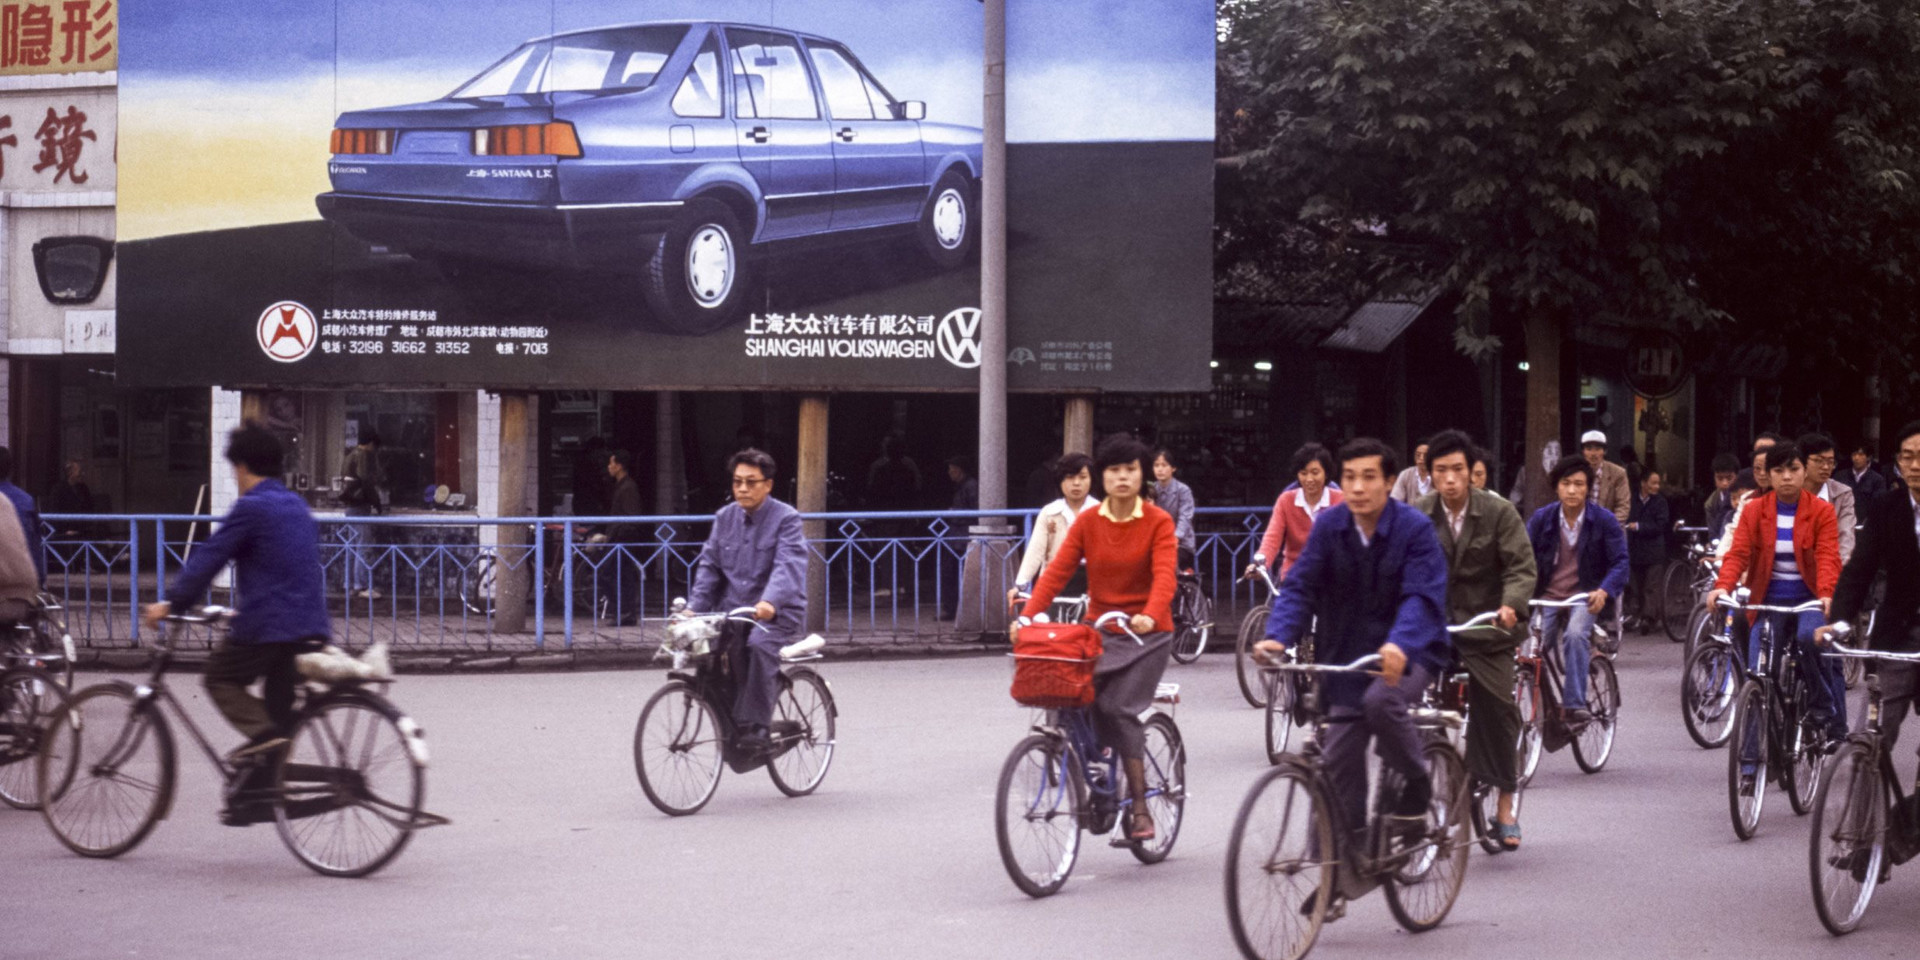 'Sở hữu ô tô rất quan trọng, văn hóa xe cộ của chúng tôi khác Mỹ' - Người Trung Quốc nhận định - Ảnh 1.